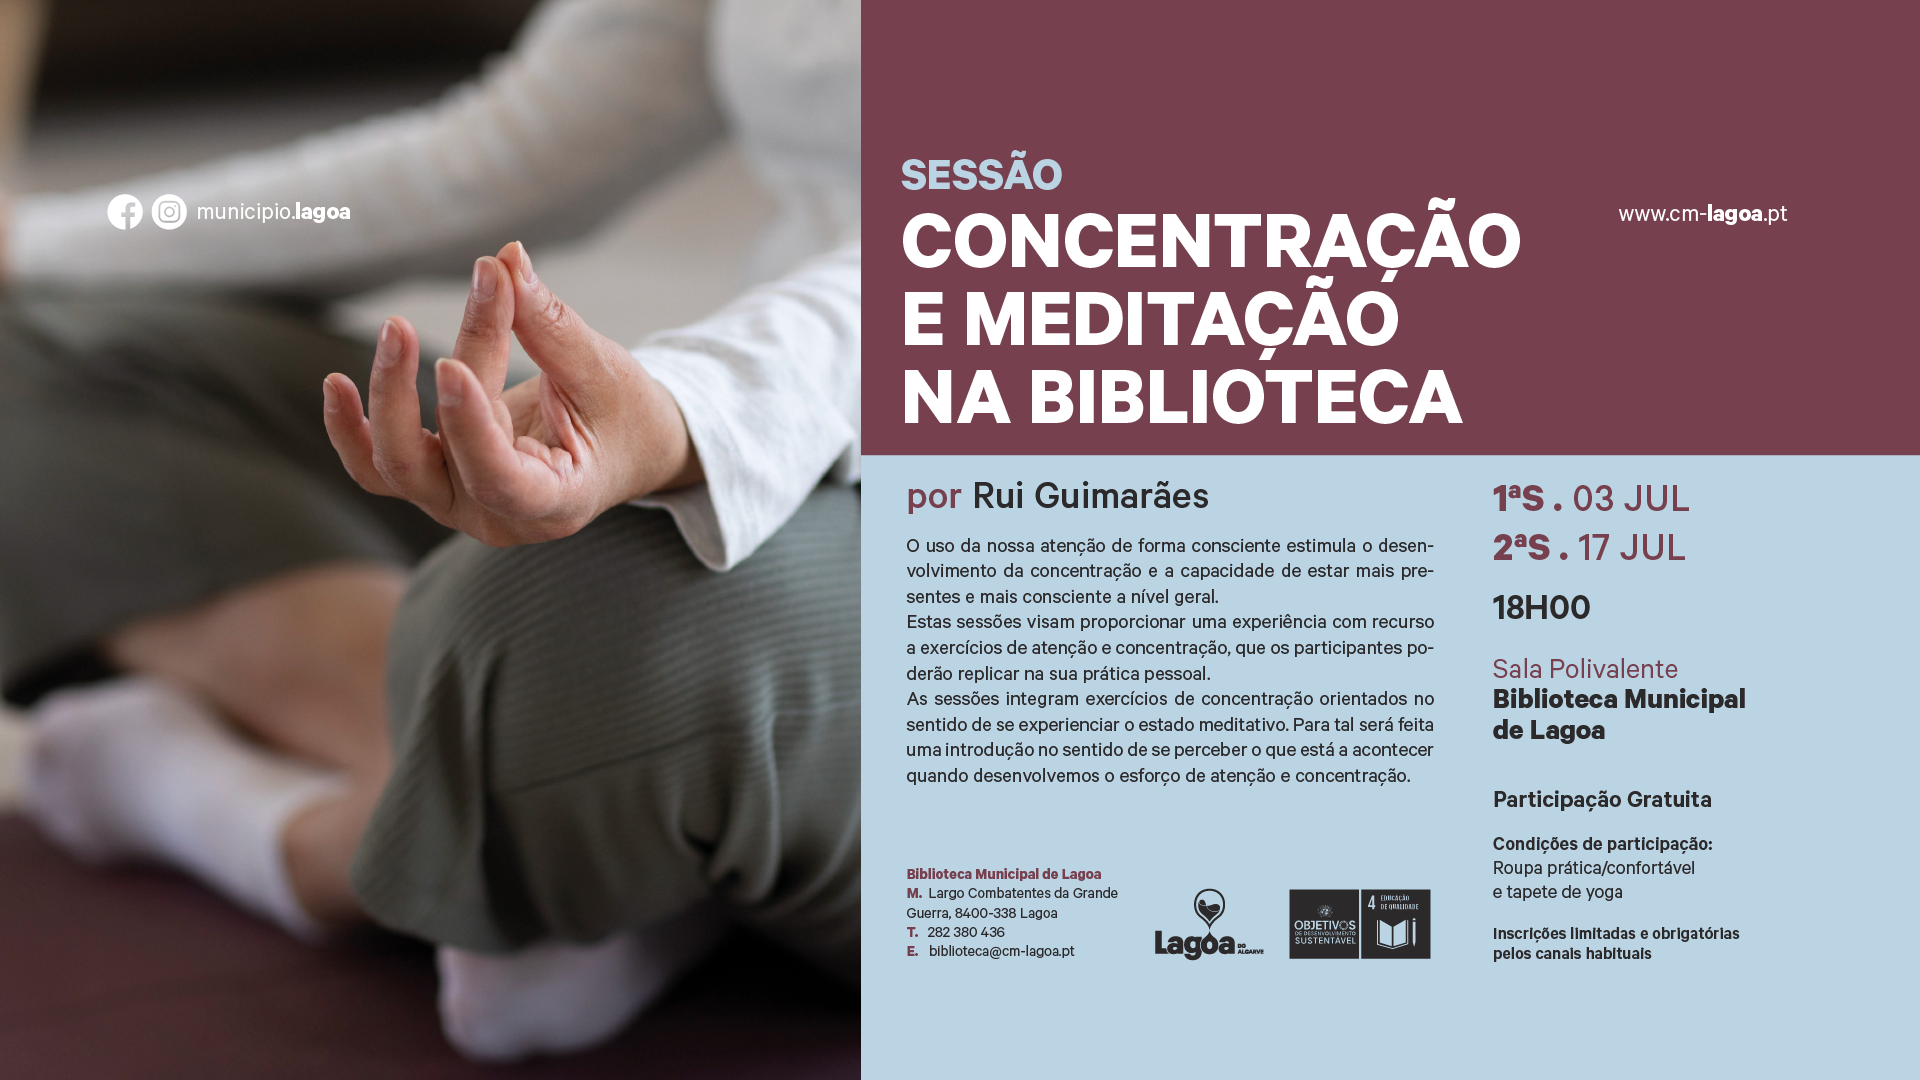 Sessões  de Concentração e Meditação na Biblioteca Municipal de Lagoa por Rui Guimarães